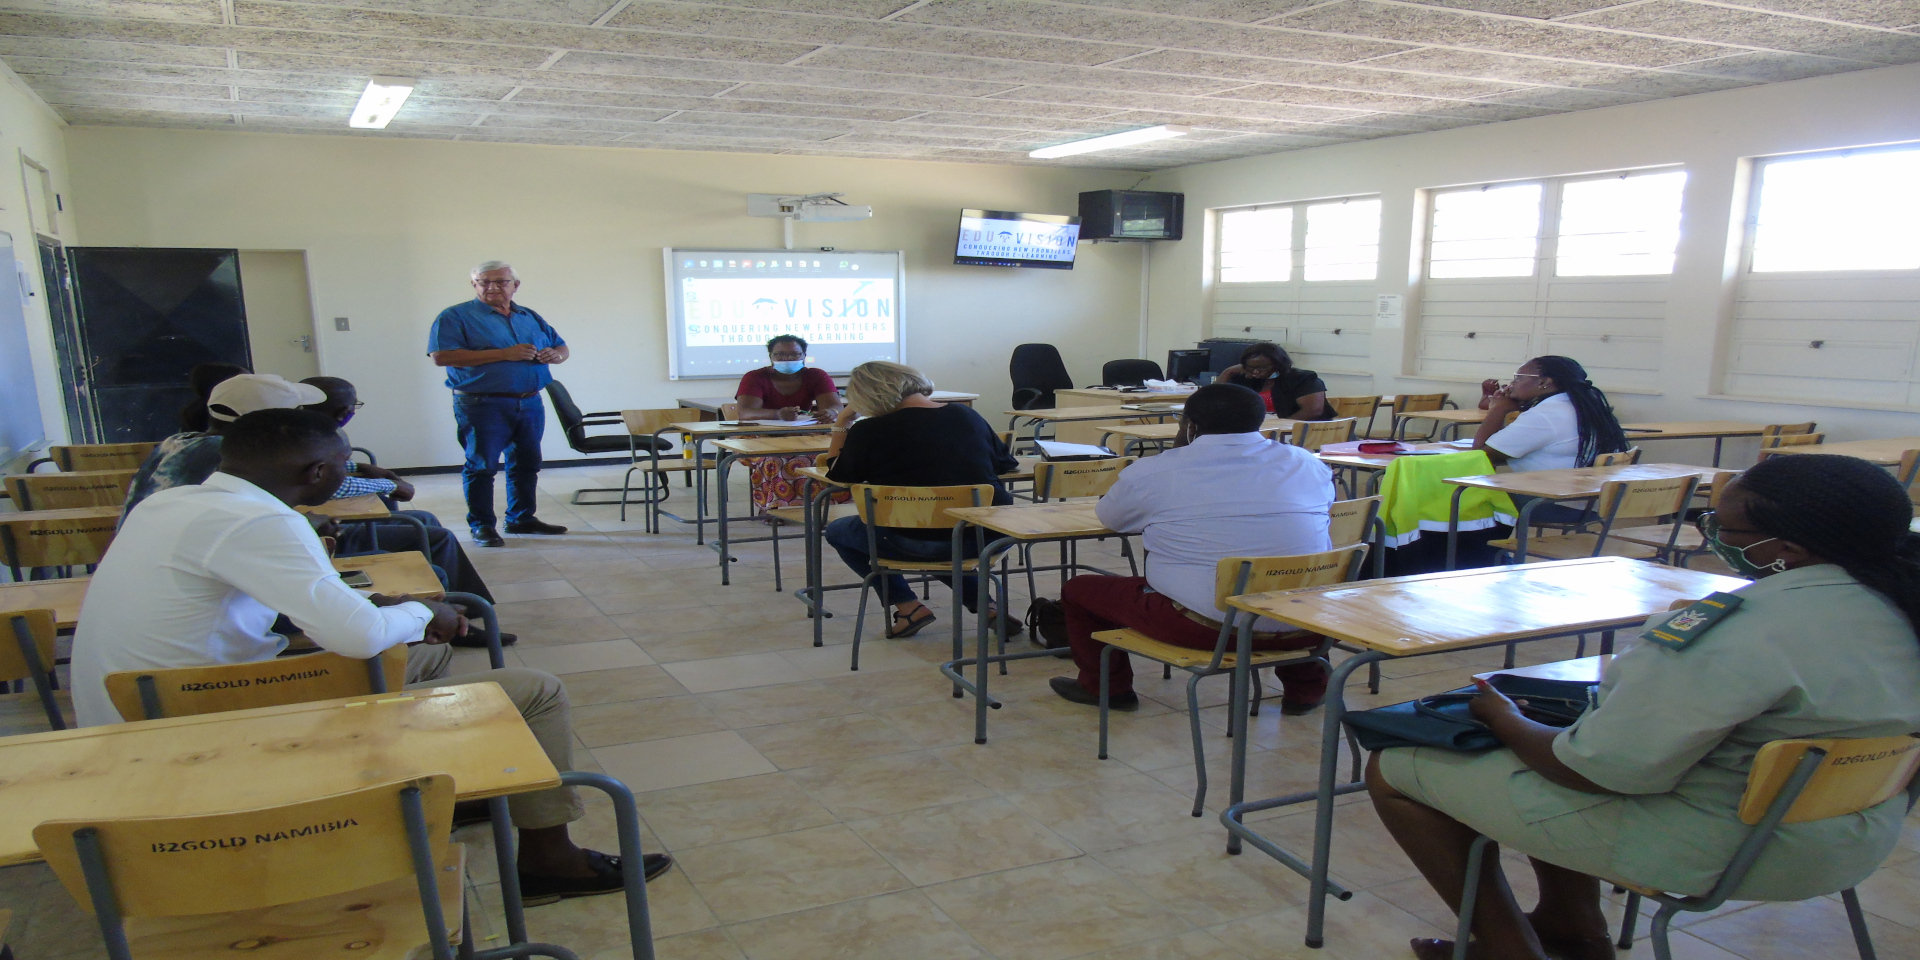 Eduvision classroom, Namibia